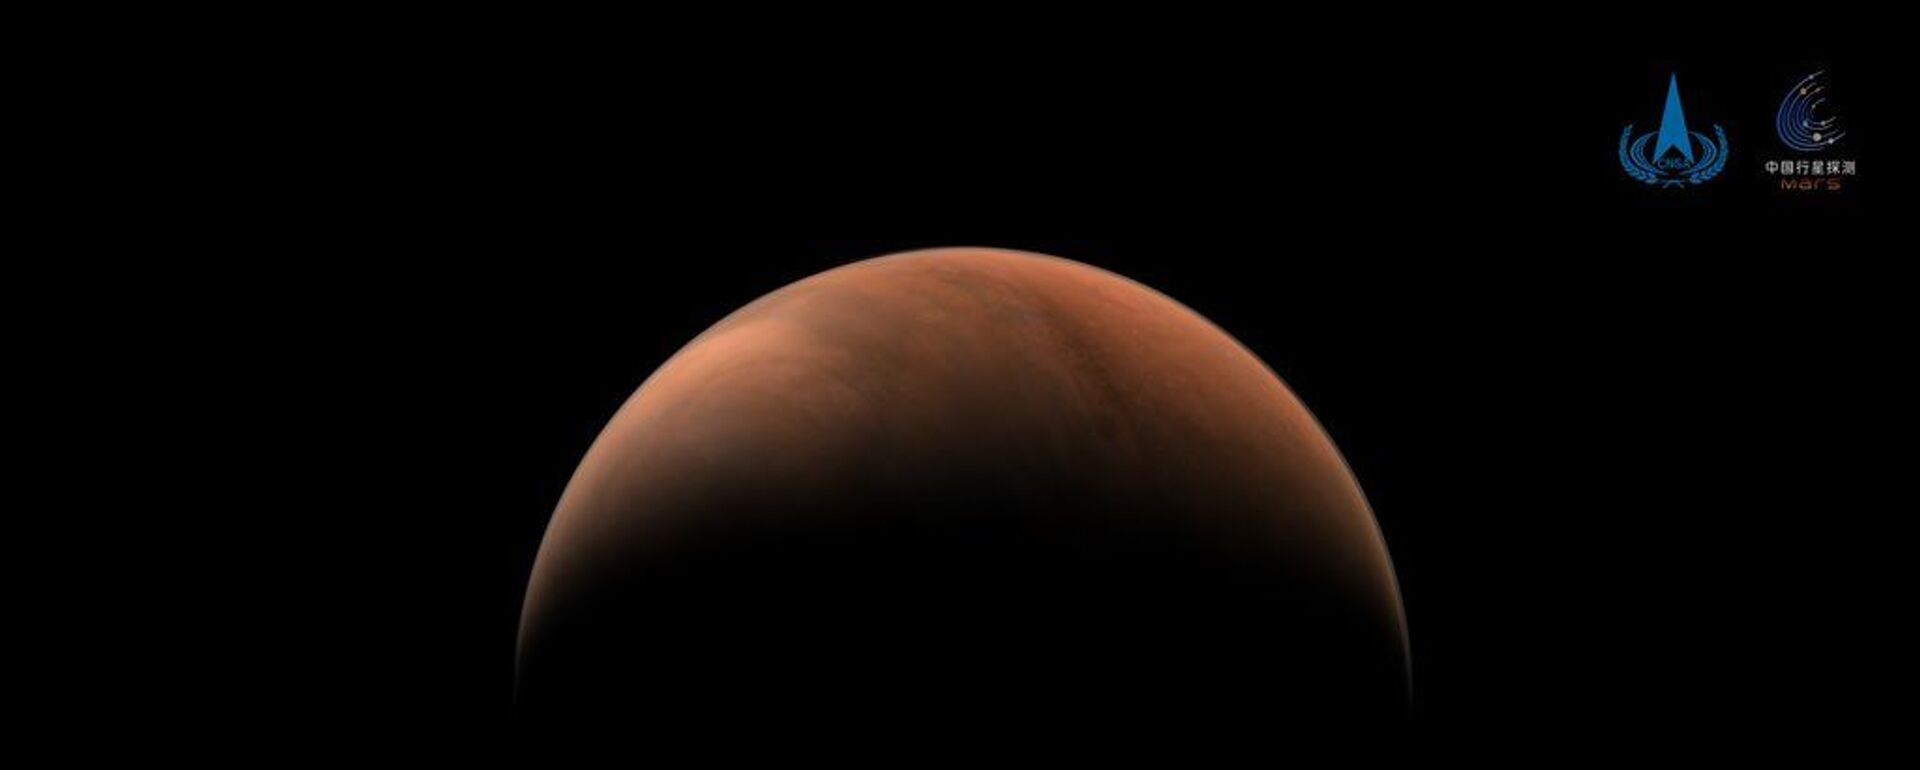 Çin'in Mars keşif aracı Tianwen-1, gezegenin iki tarafından fotoğraf gönderdi - Sputnik Türkiye, 1920, 18.10.2021